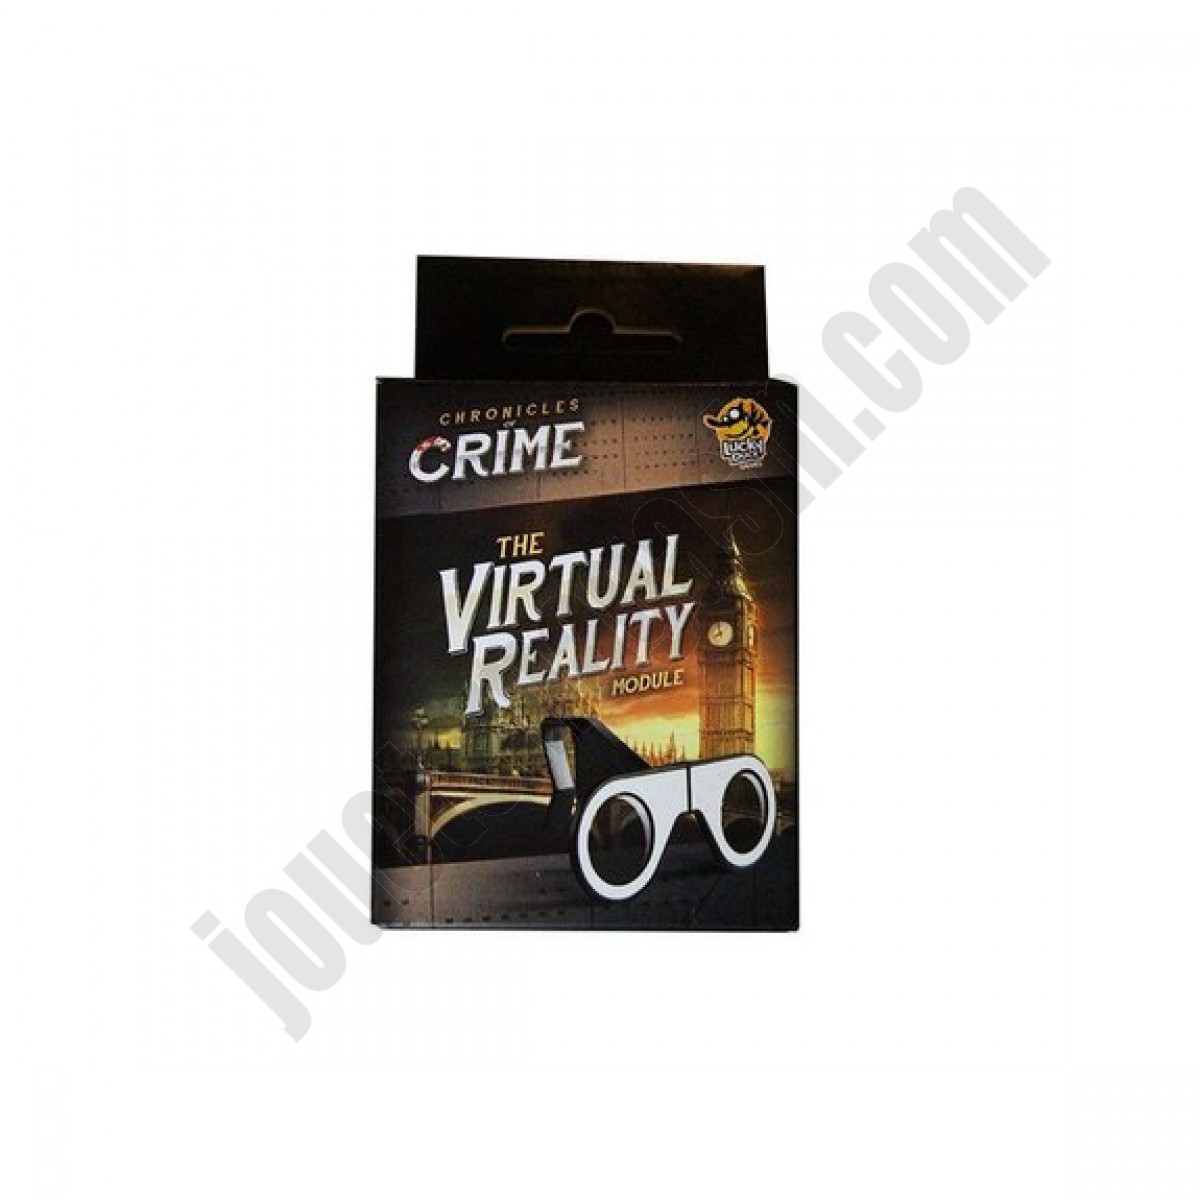 Chronicles of crime : Module de réalité virtuelle En promotion - Chronicles of crime : Module de réalité virtuelle En promotion